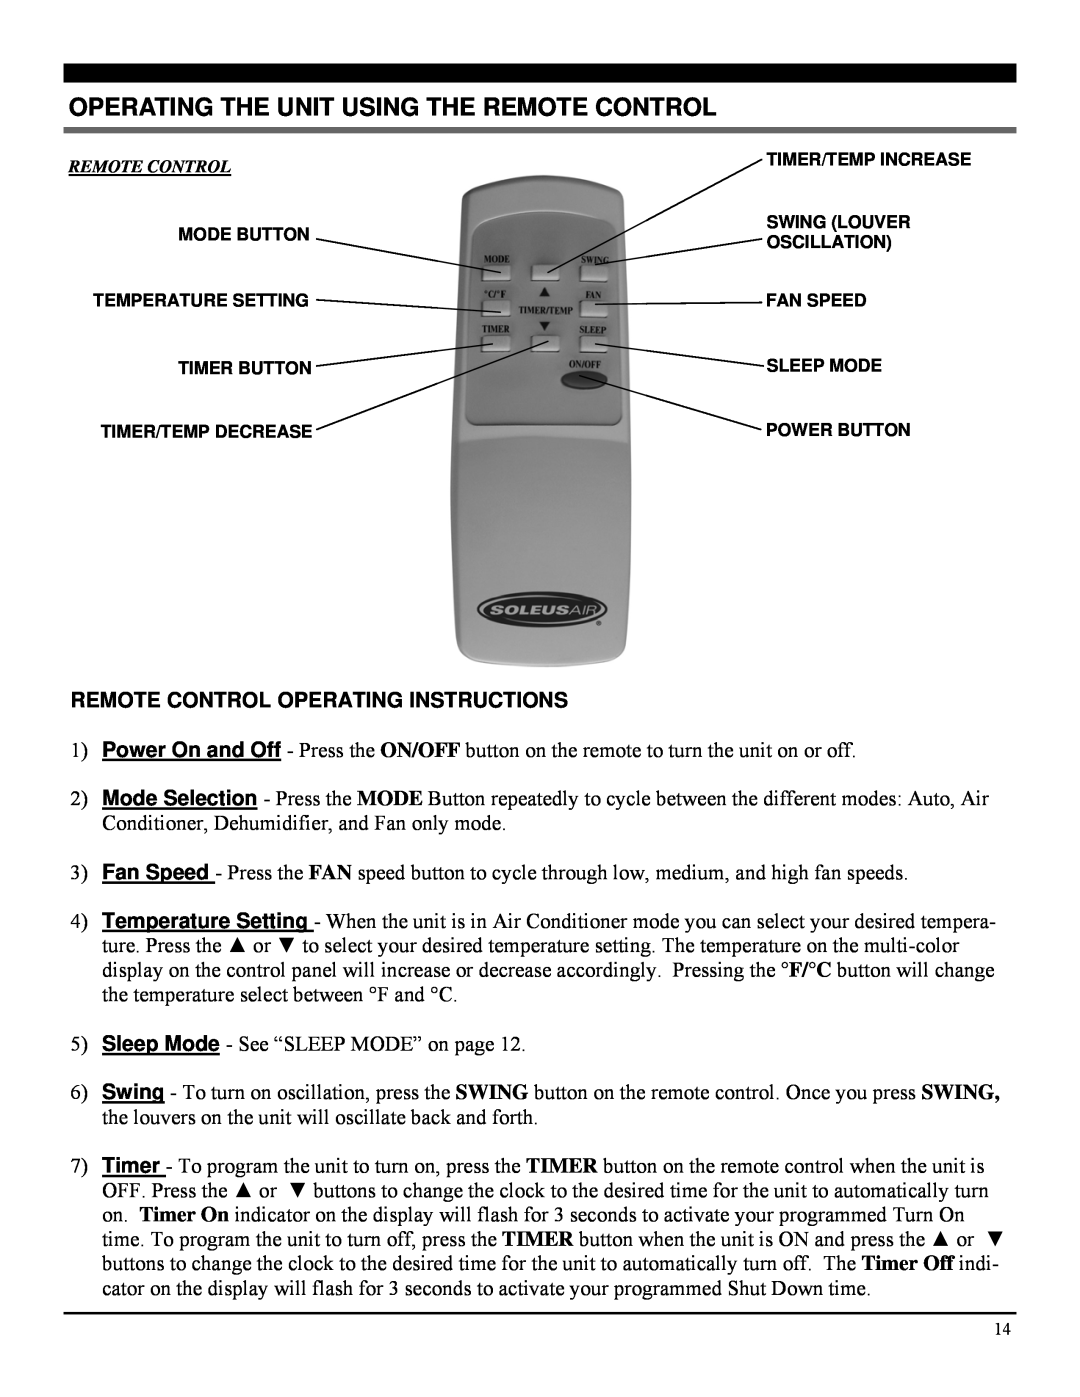 Soleus Air PE2-07R-62 manual Operating The Unit Using The Remote Control, Remote Control Operating Instructions 